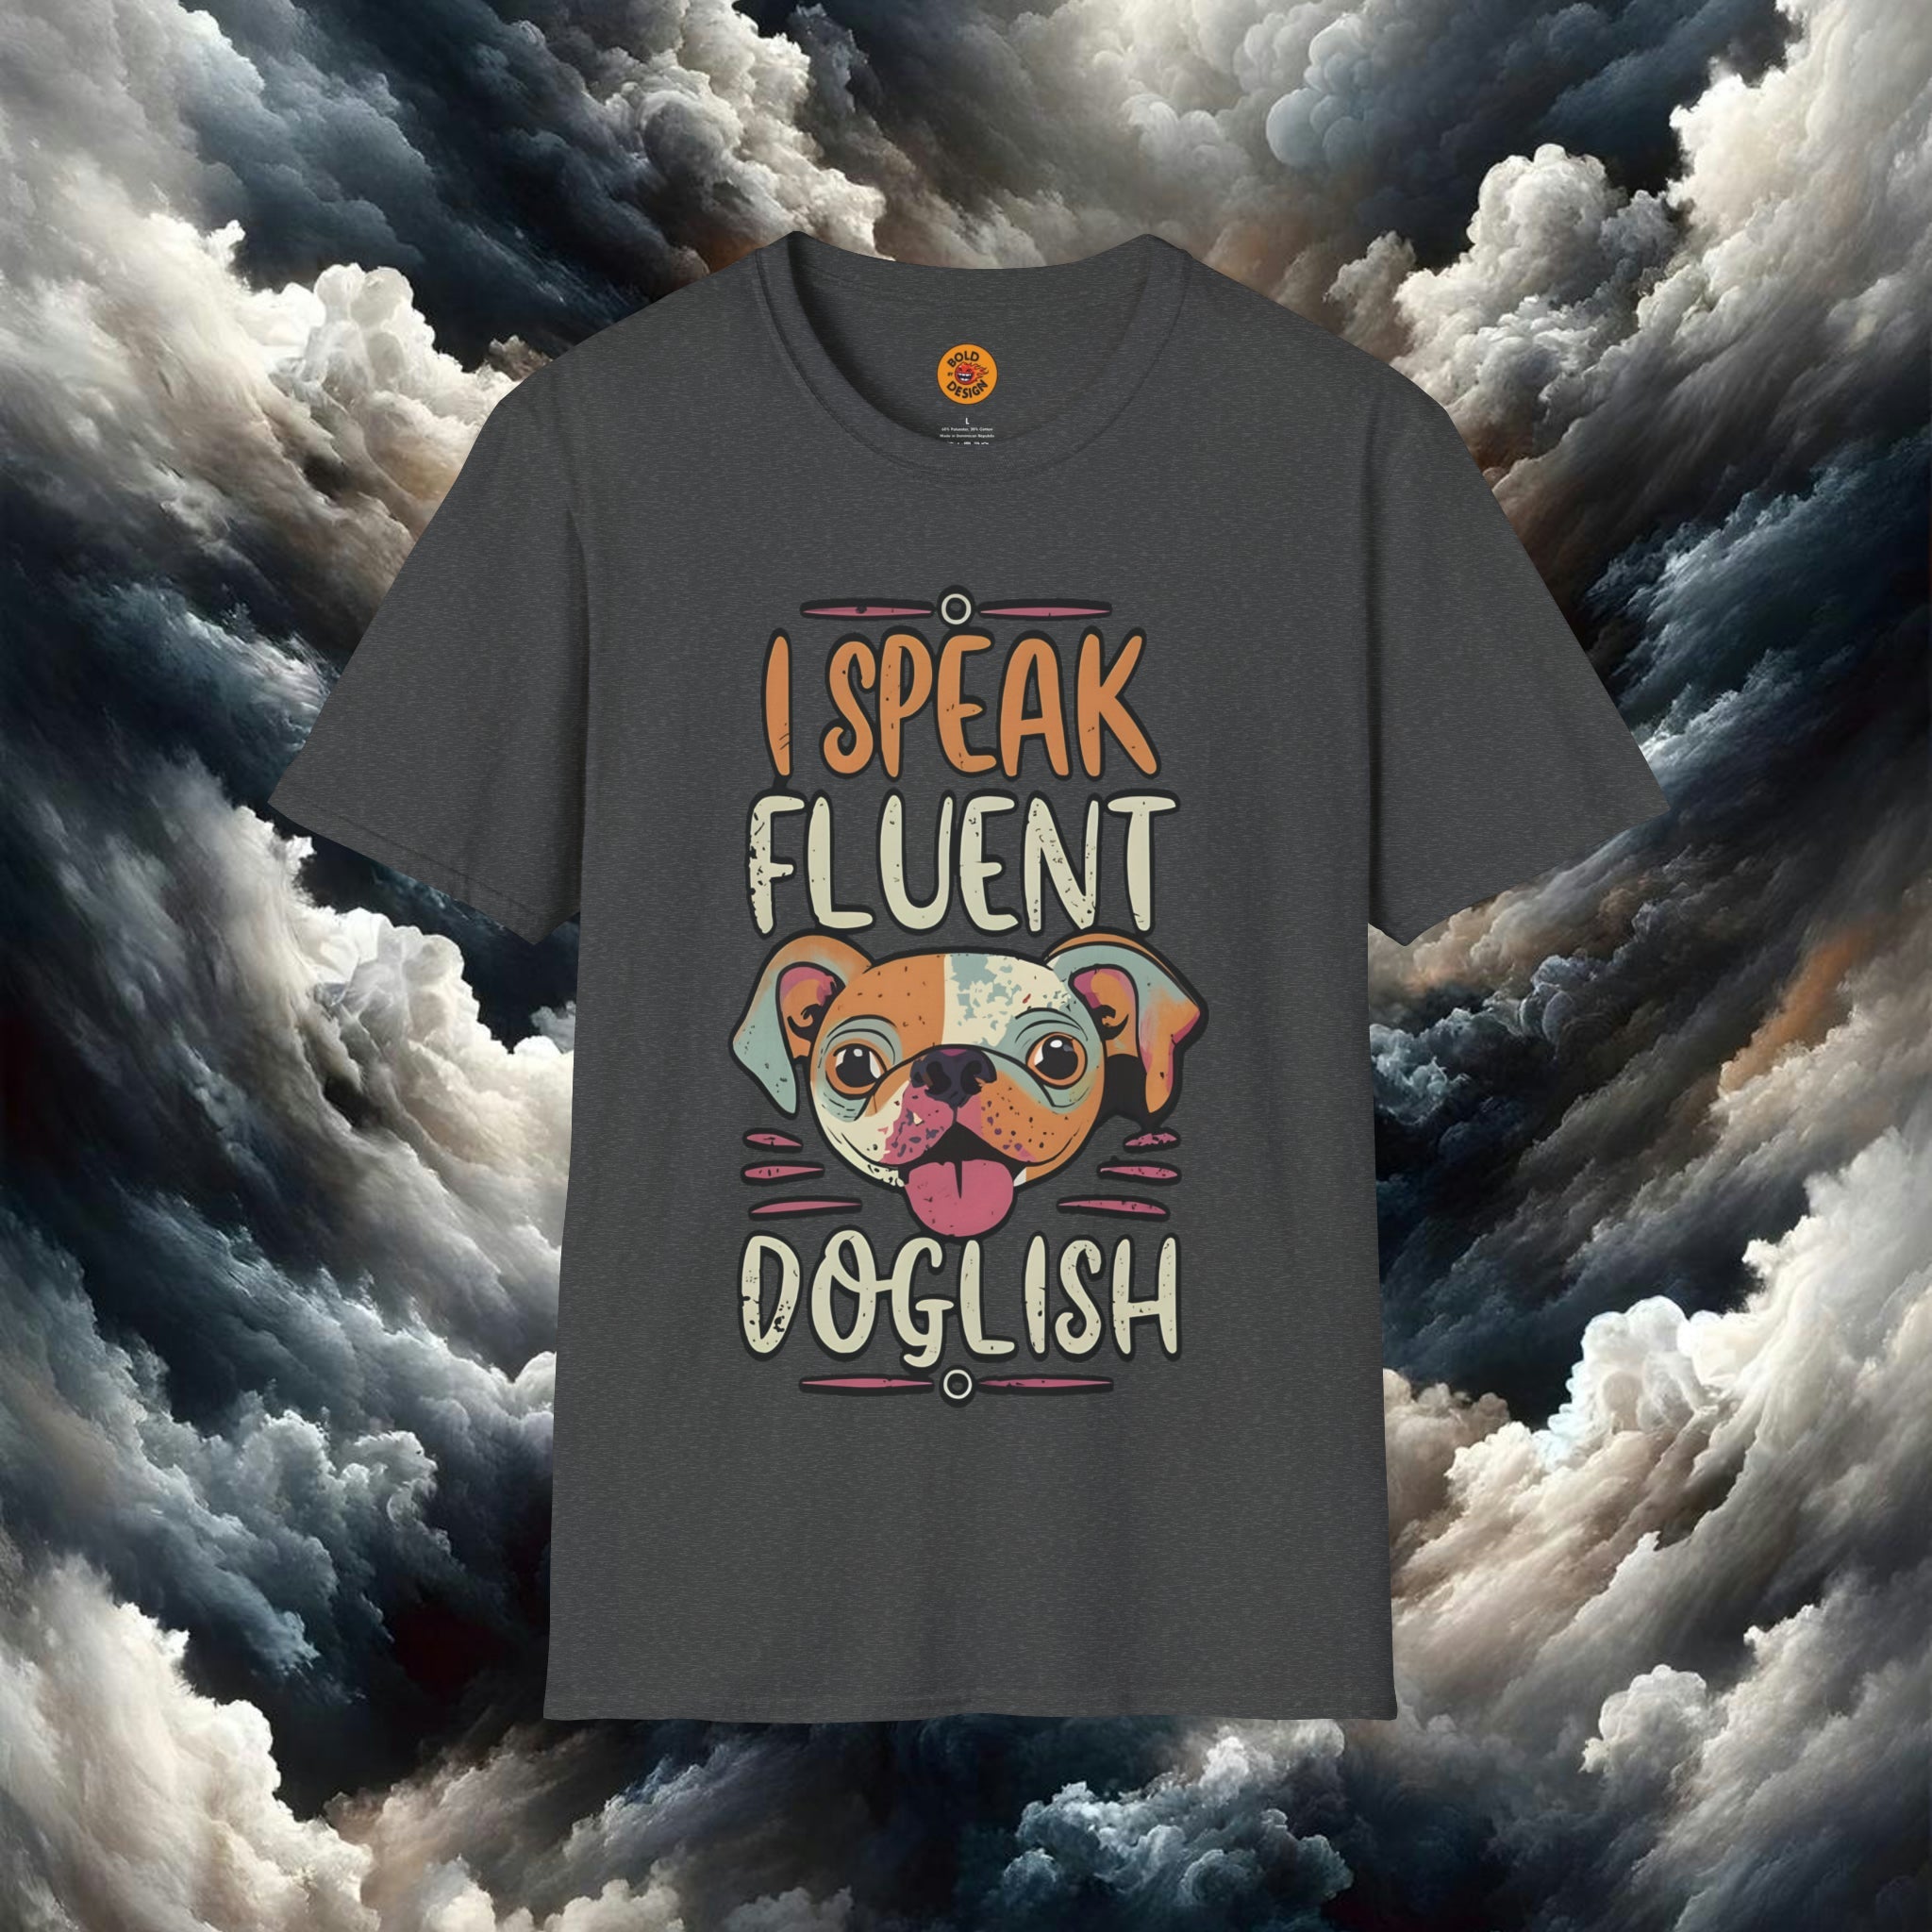 Speak Fluent Doglish Tee